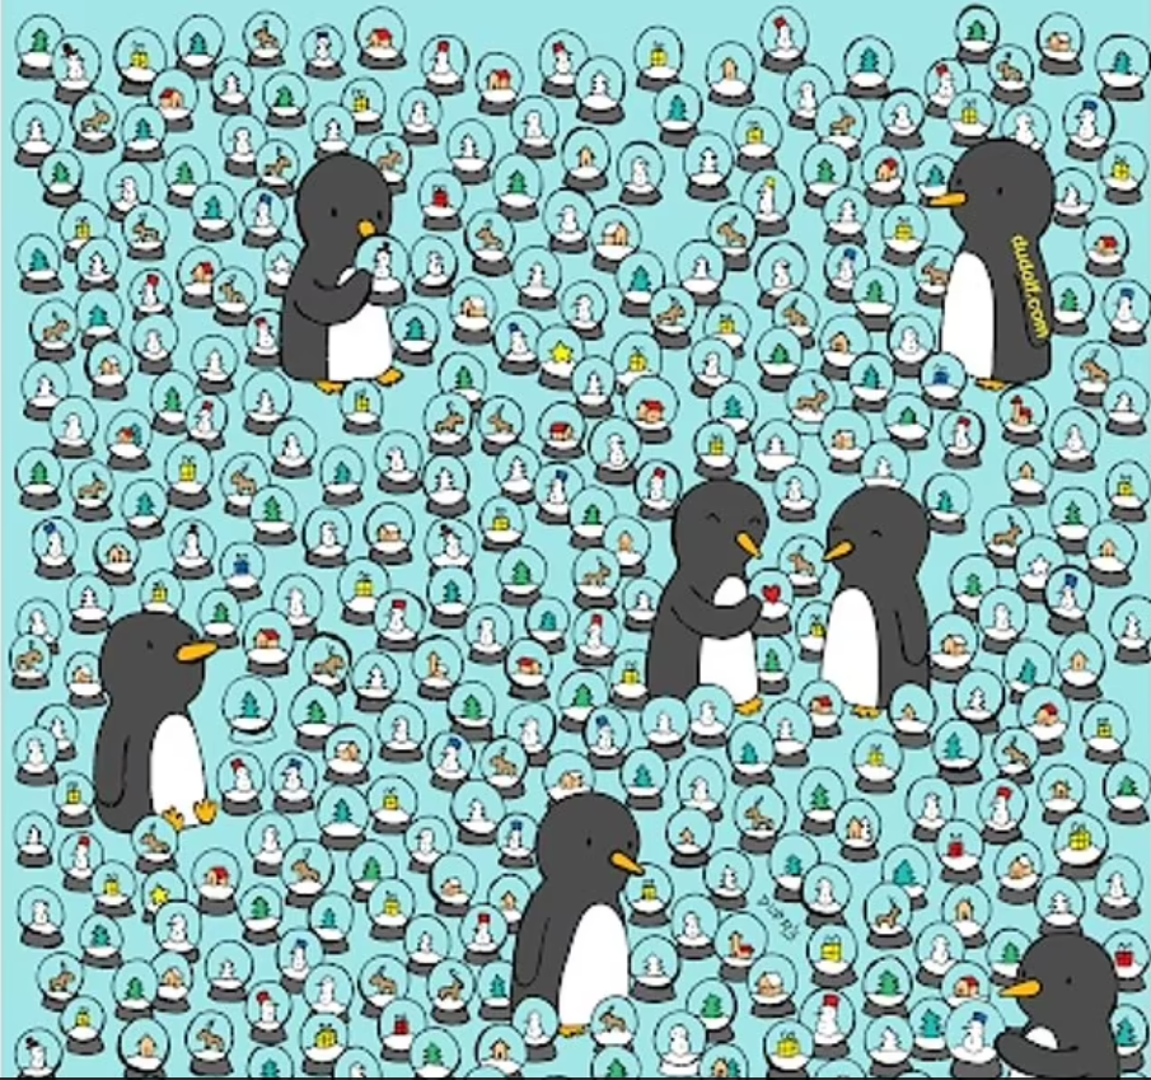 Još jedna mozgalica prikazuje pingvine, a na ovoj su oni okruženi snježnim kuglama. U samo četiri kugle, naime, nalaze se zvijezde. Pokušajte ih pronaći.